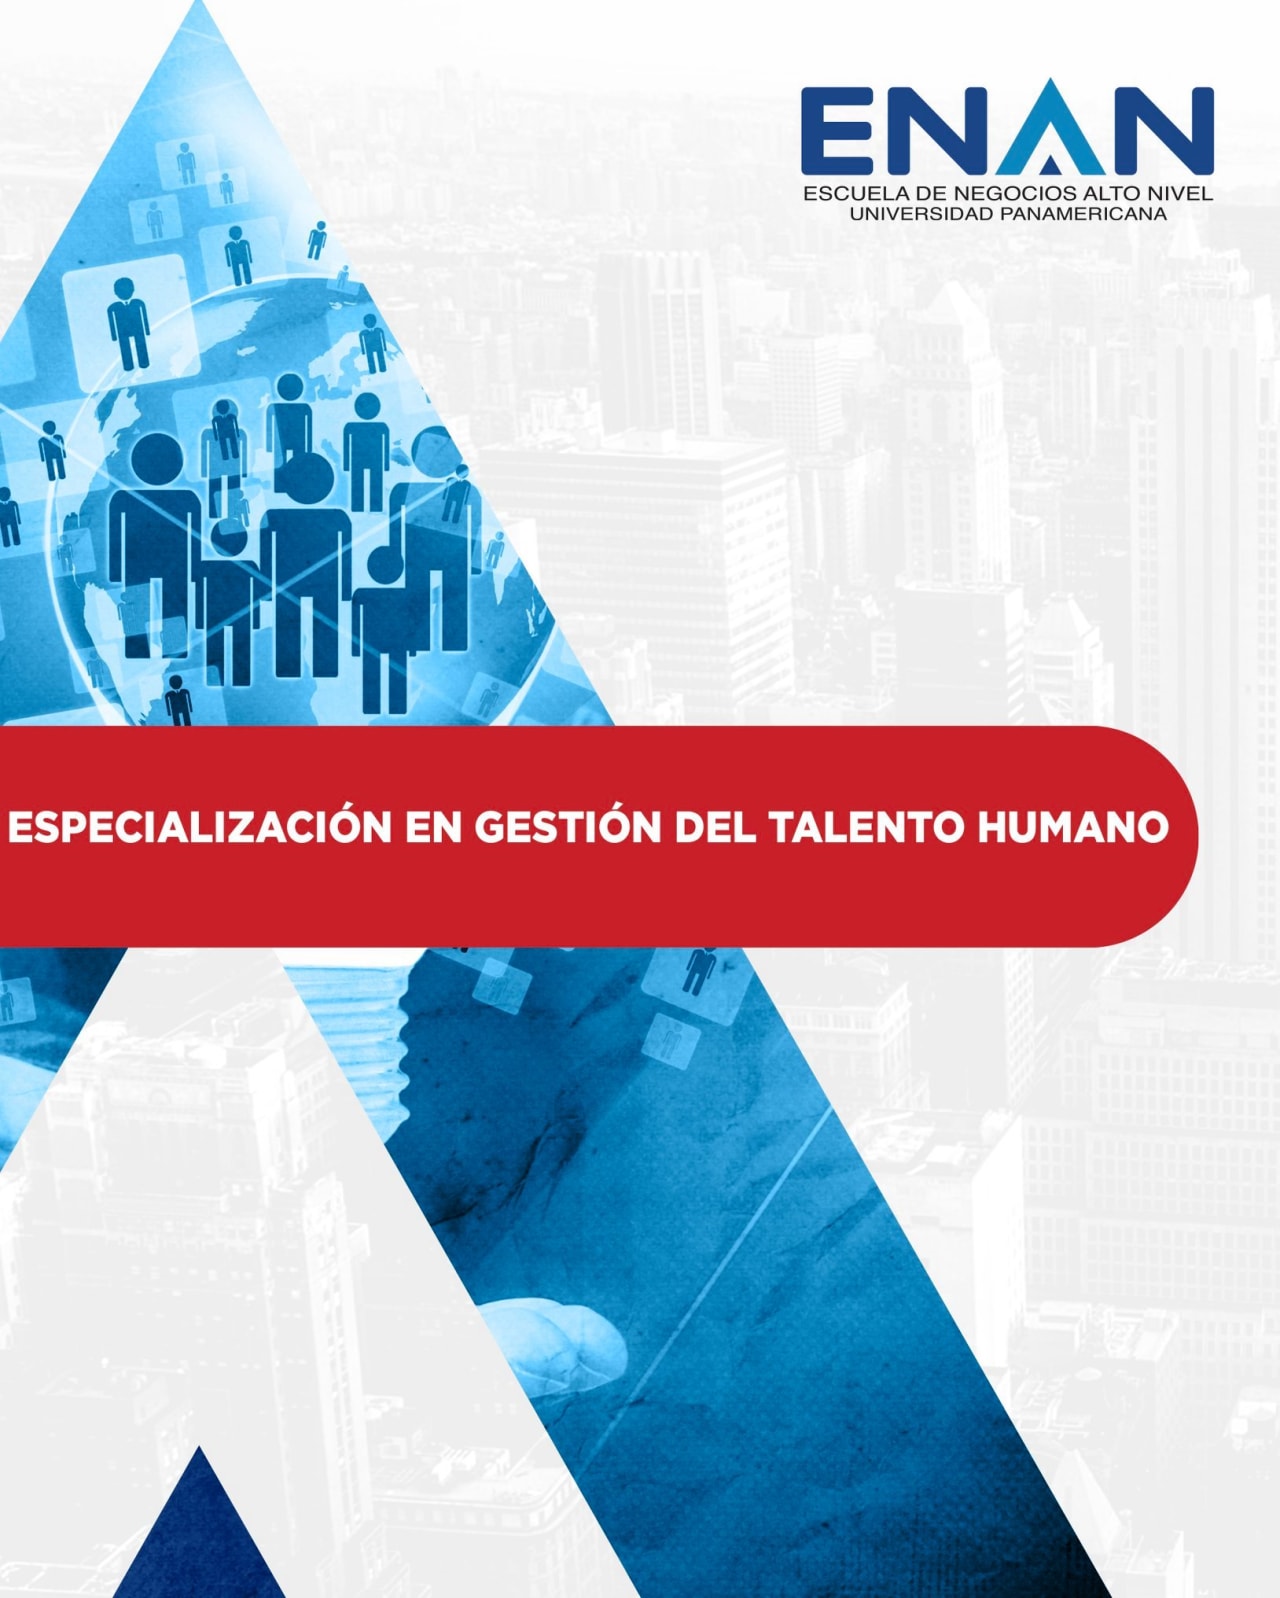 Escuela de Negocios Alto Nivel - Universidad Panamericana de Guatemala Specializacija žmogaus talentų valdyme